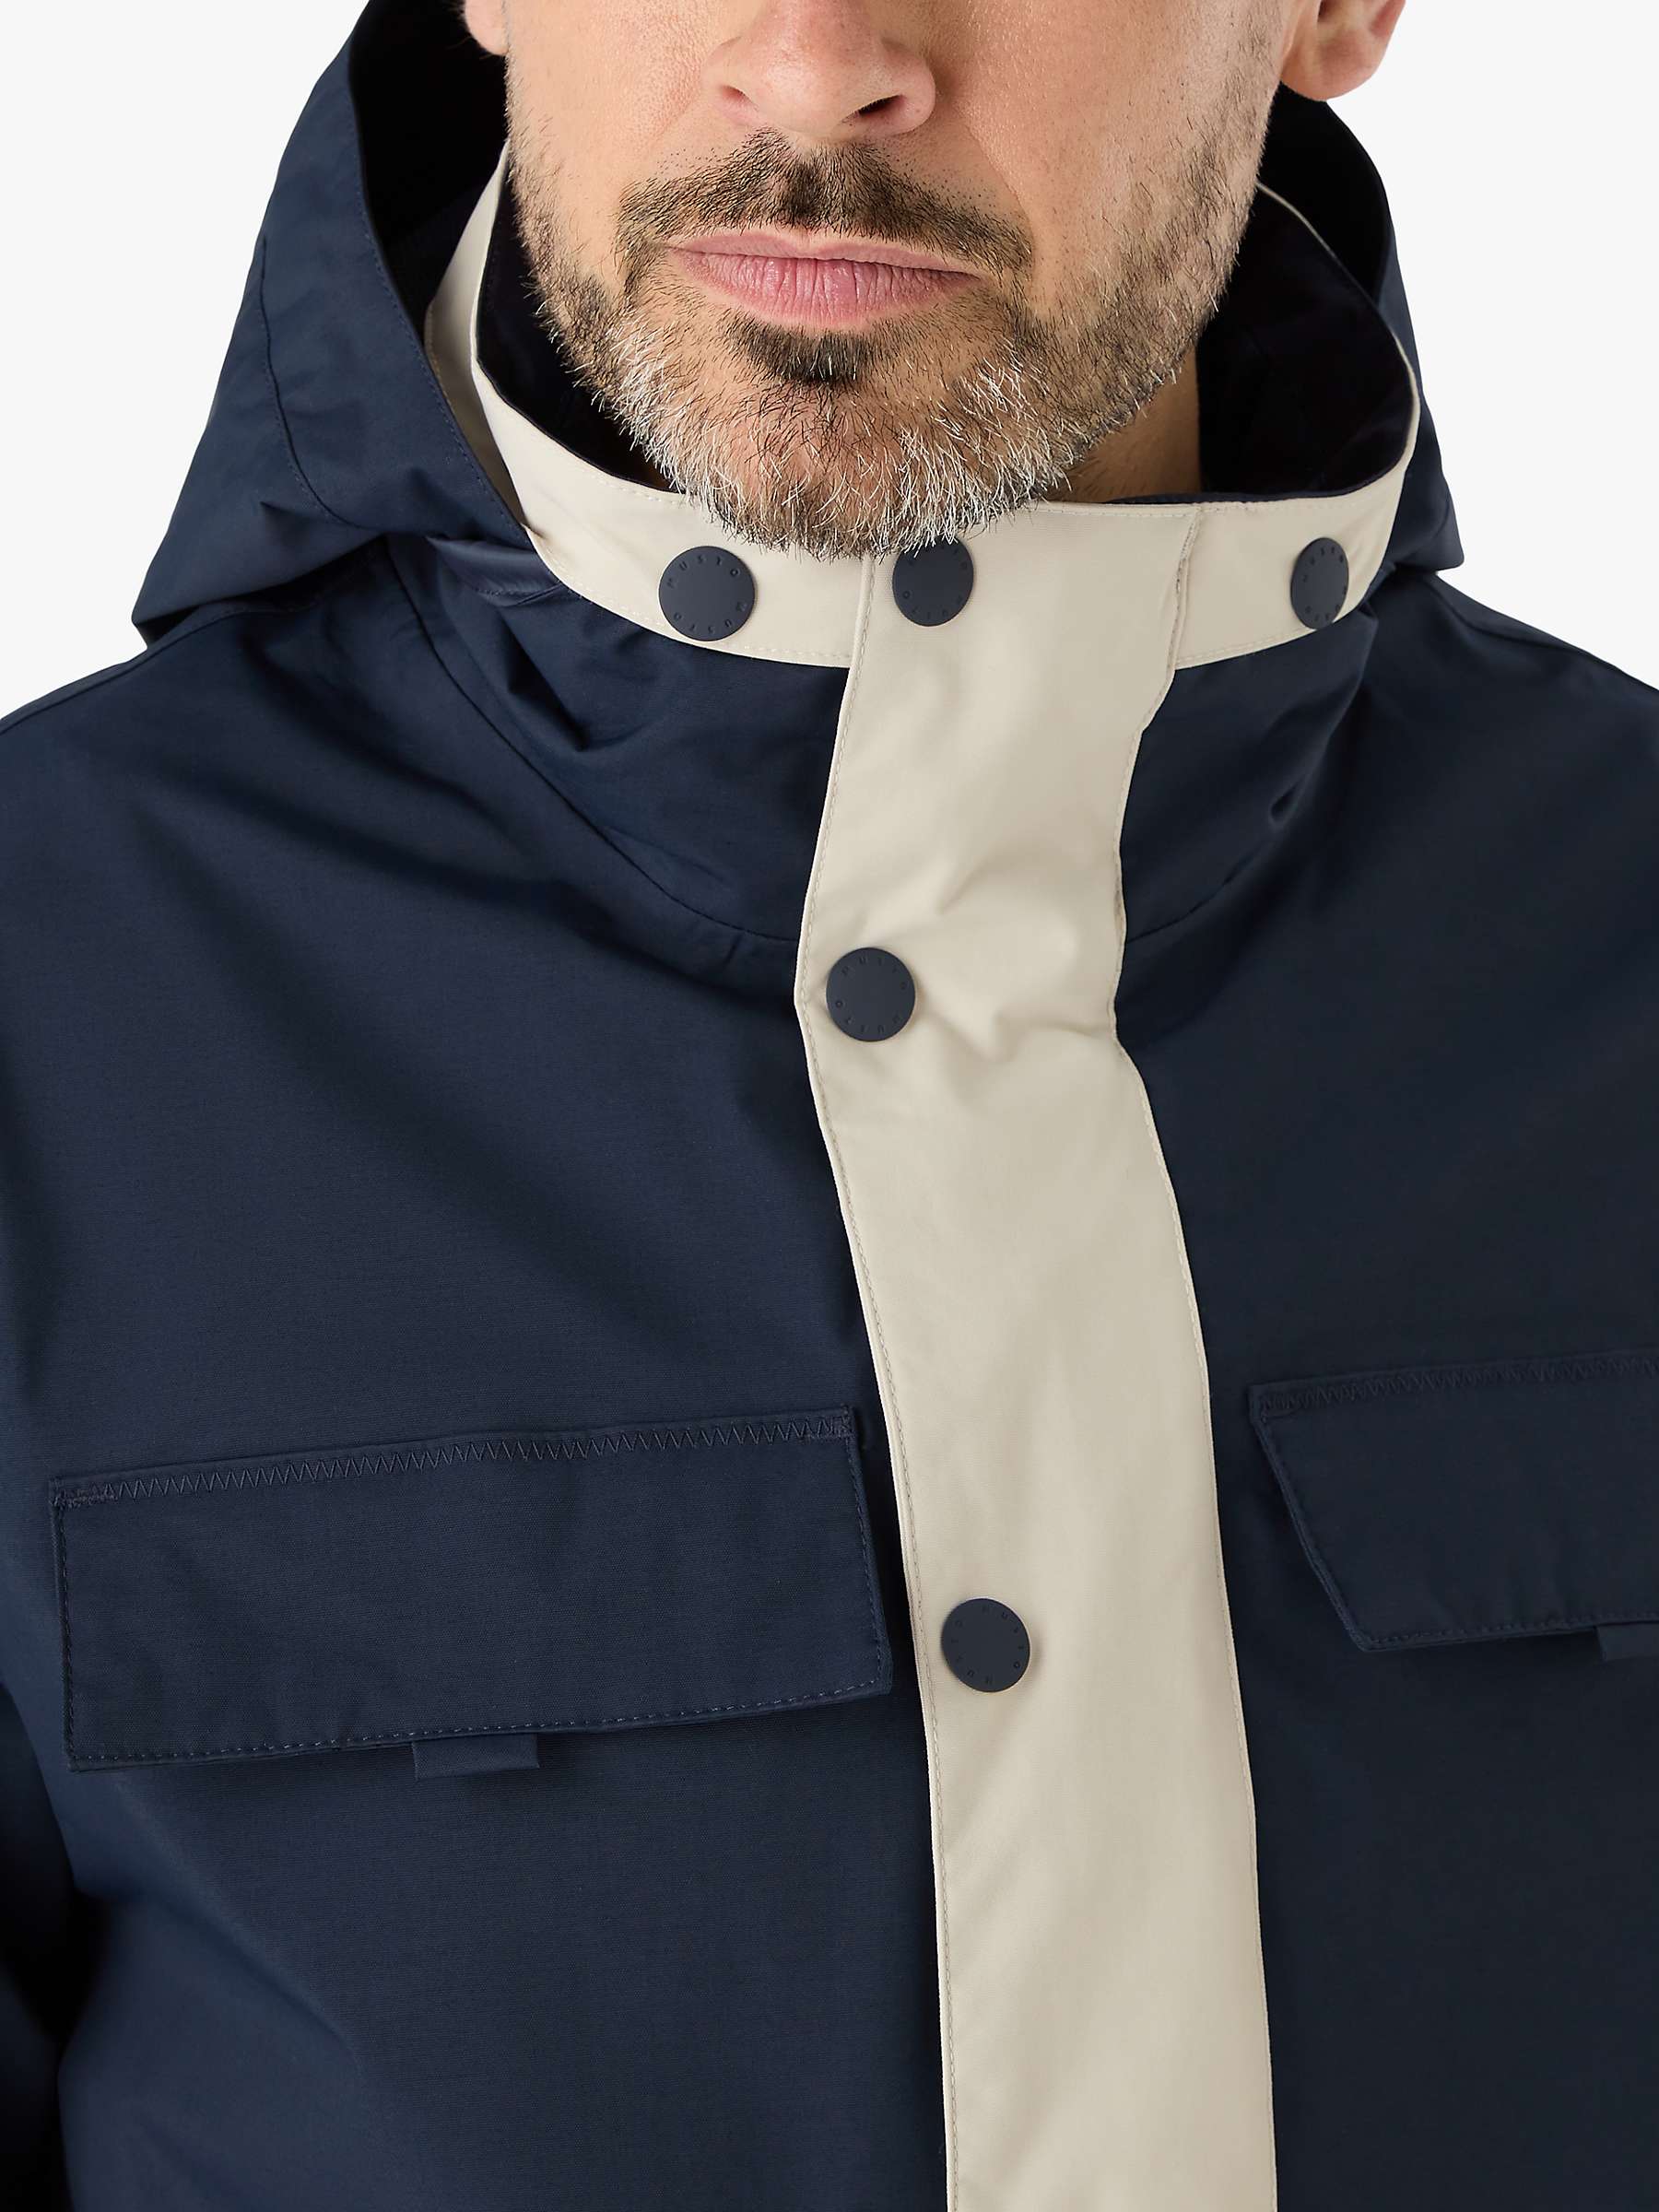 Buy Musto BRI Classic Waterproof Jacket, Pumice/Navy Online at johnlewis.com